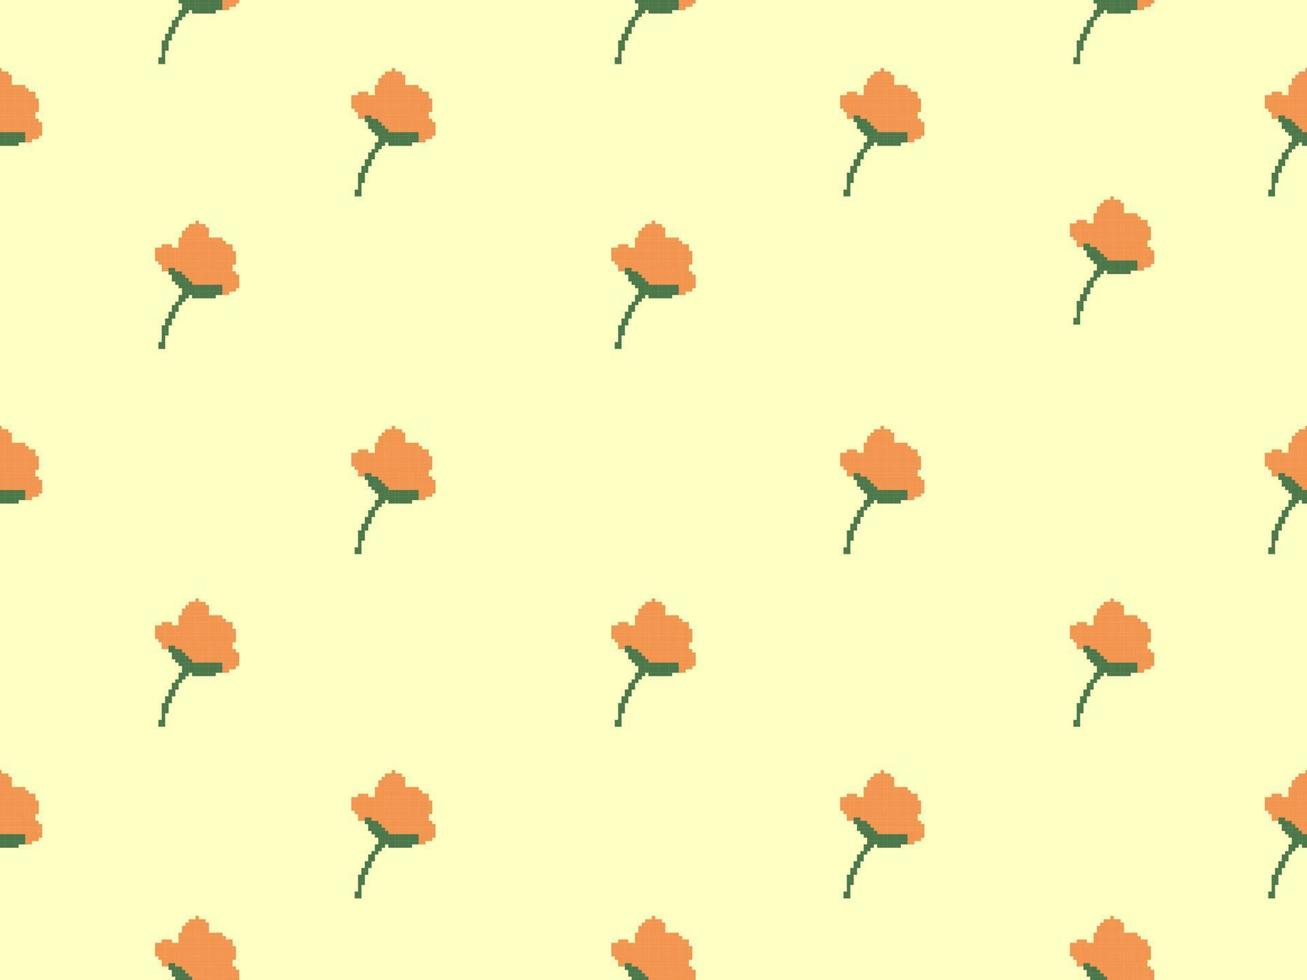 blomma seriefigur seamless mönster på gul background.pixel stil vektor